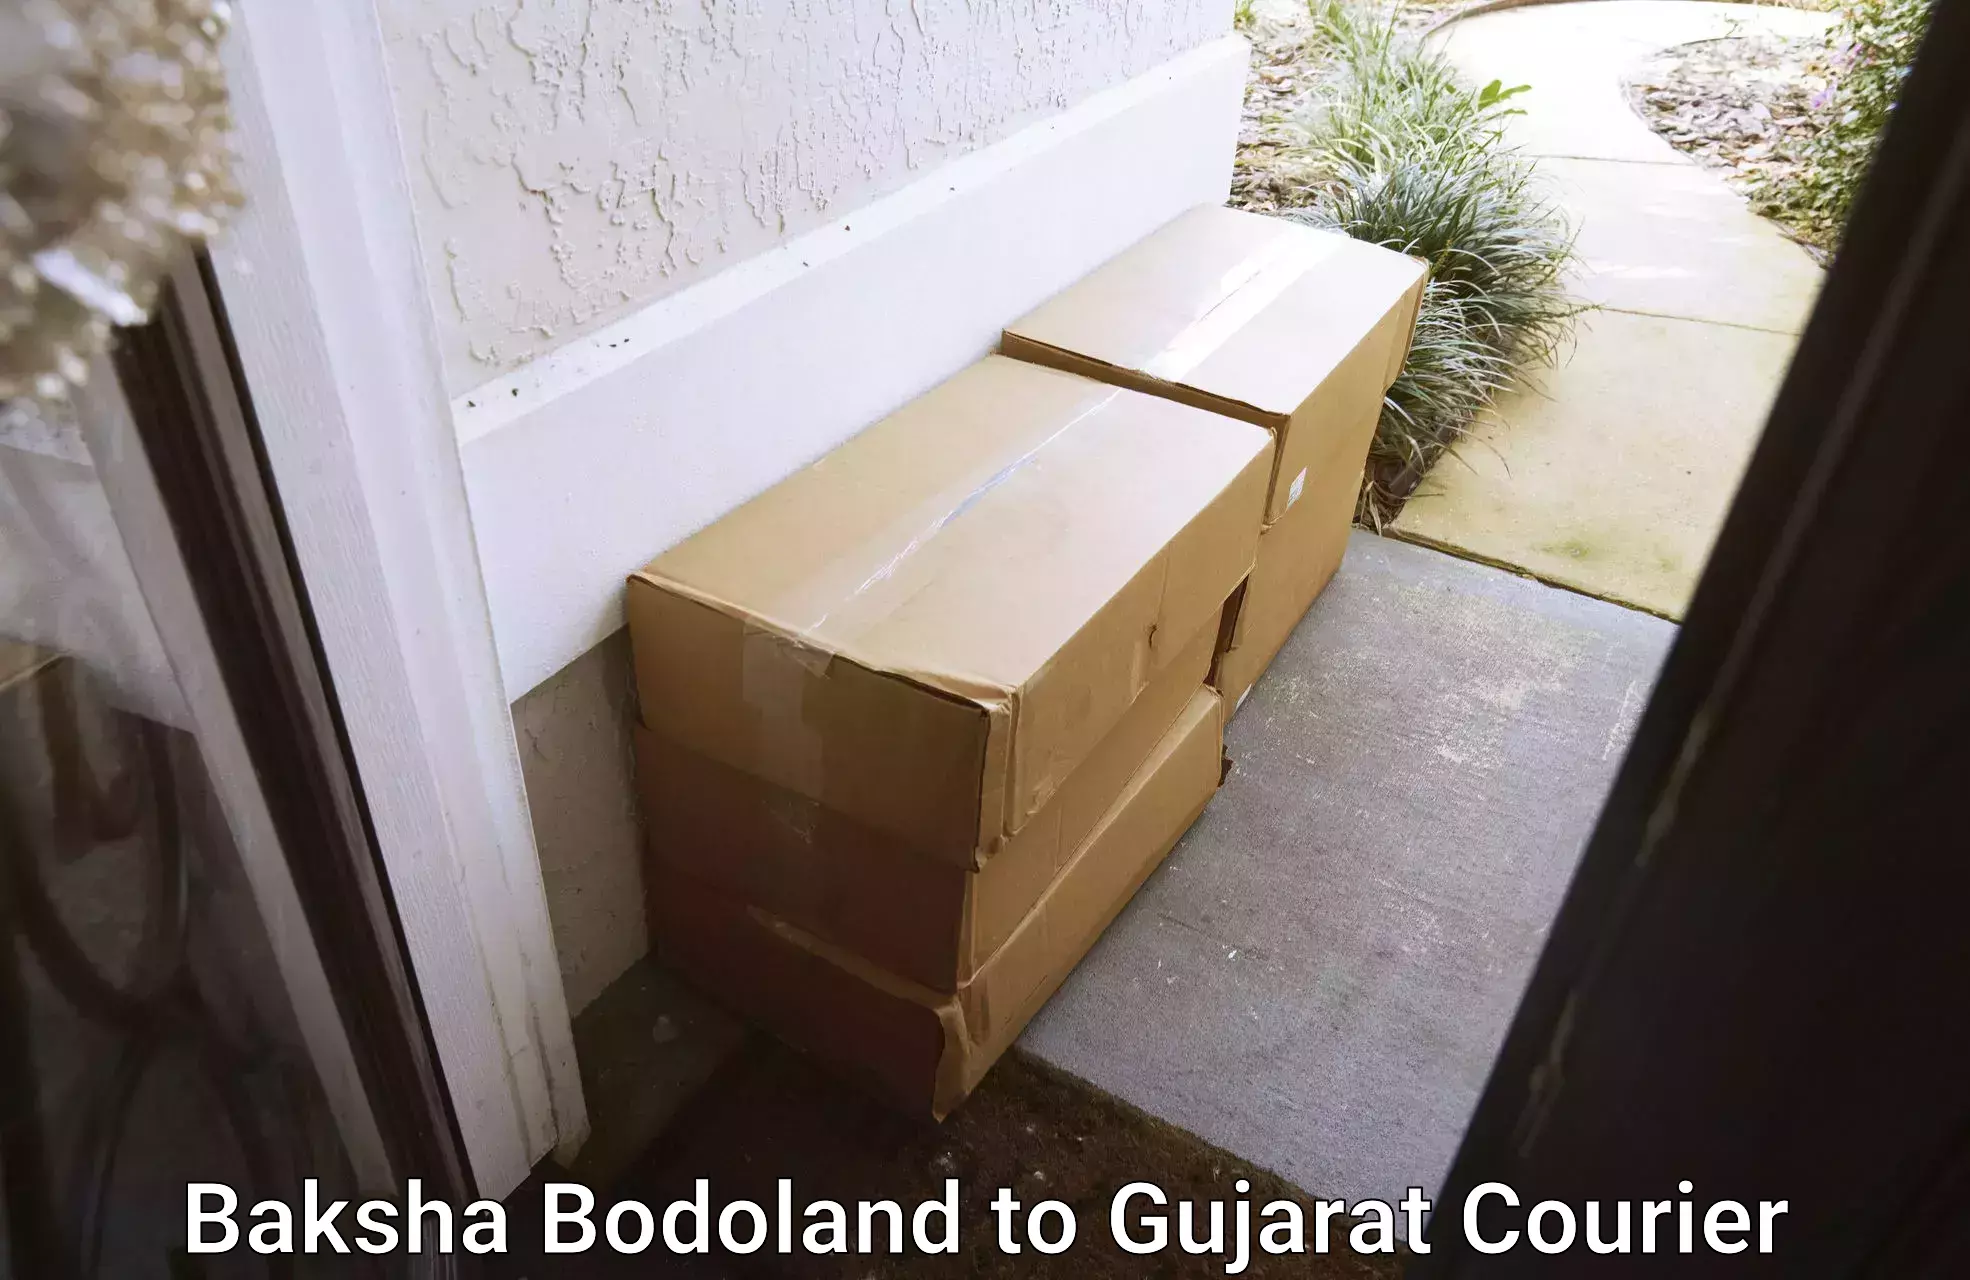 Door-to-door shipment in Baksha Bodoland to Bardoli